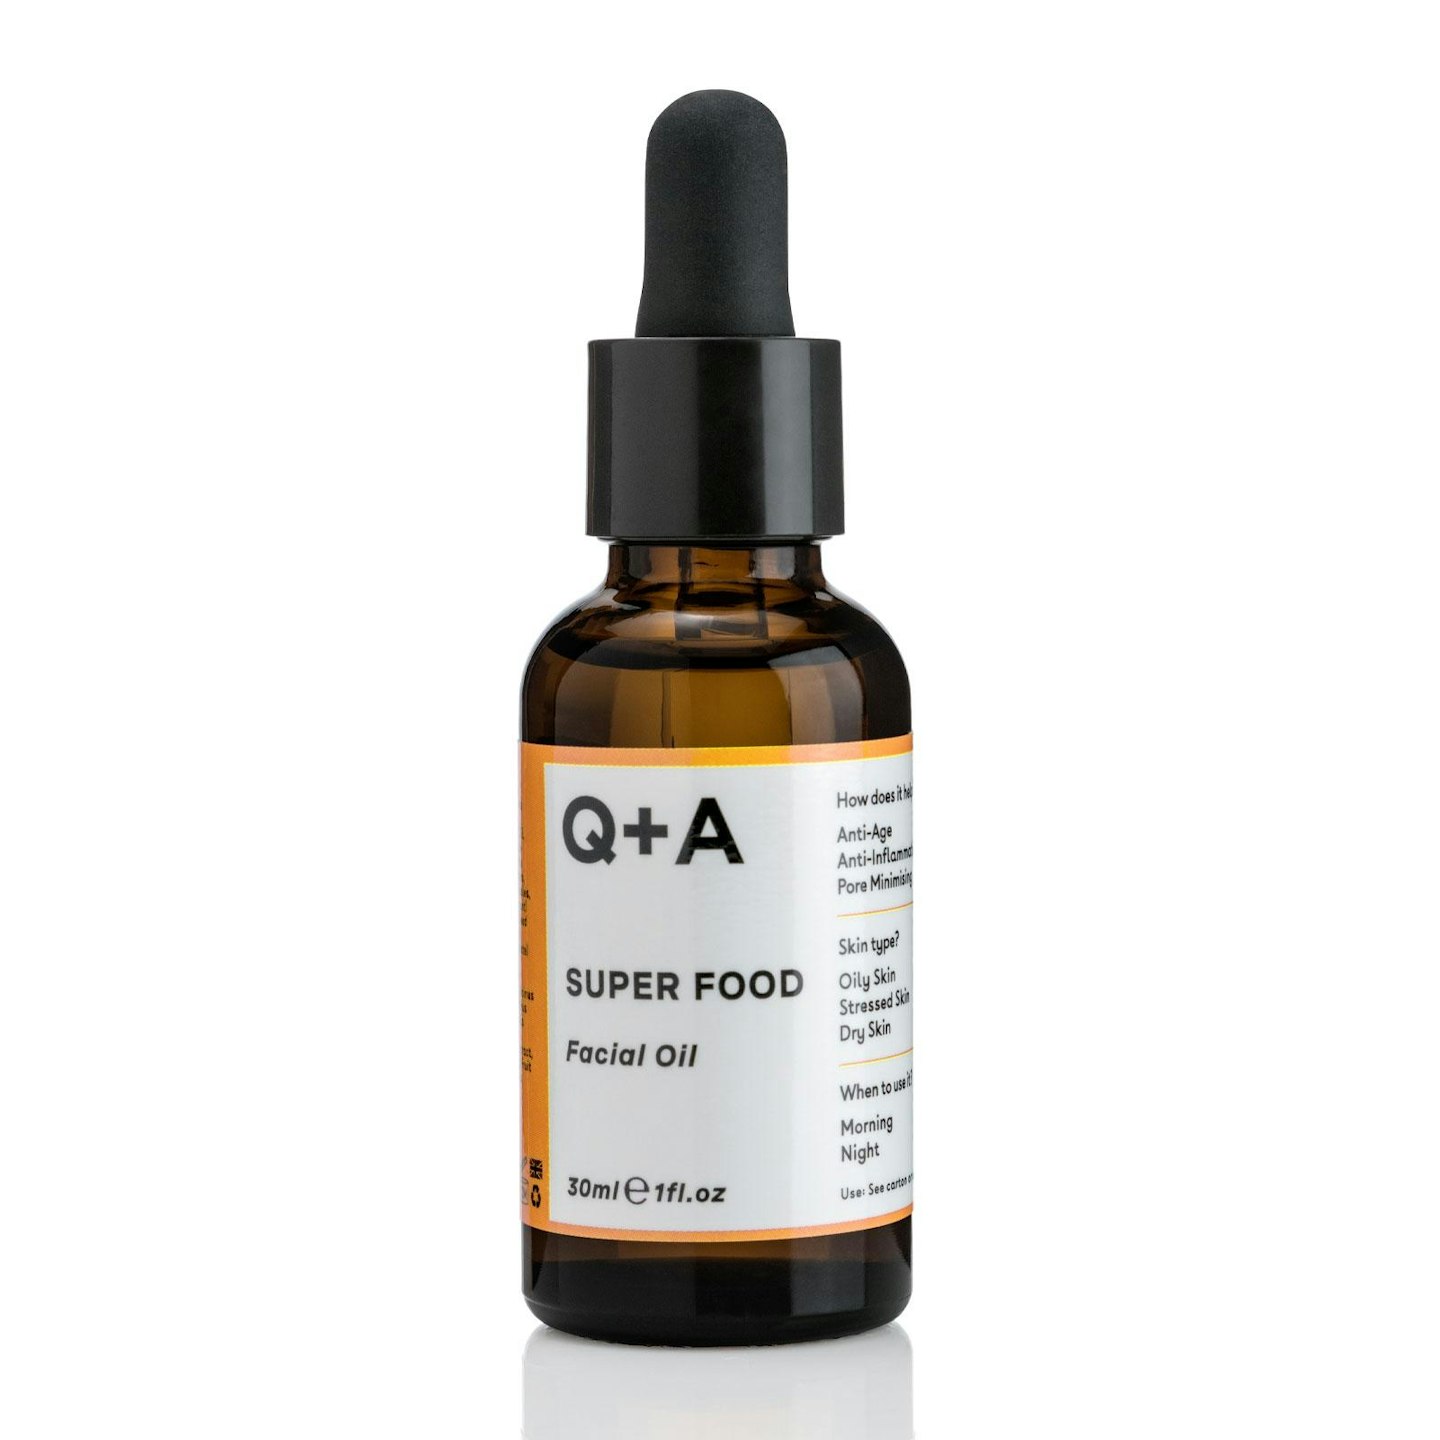 Q+A Super Food Facial Oil